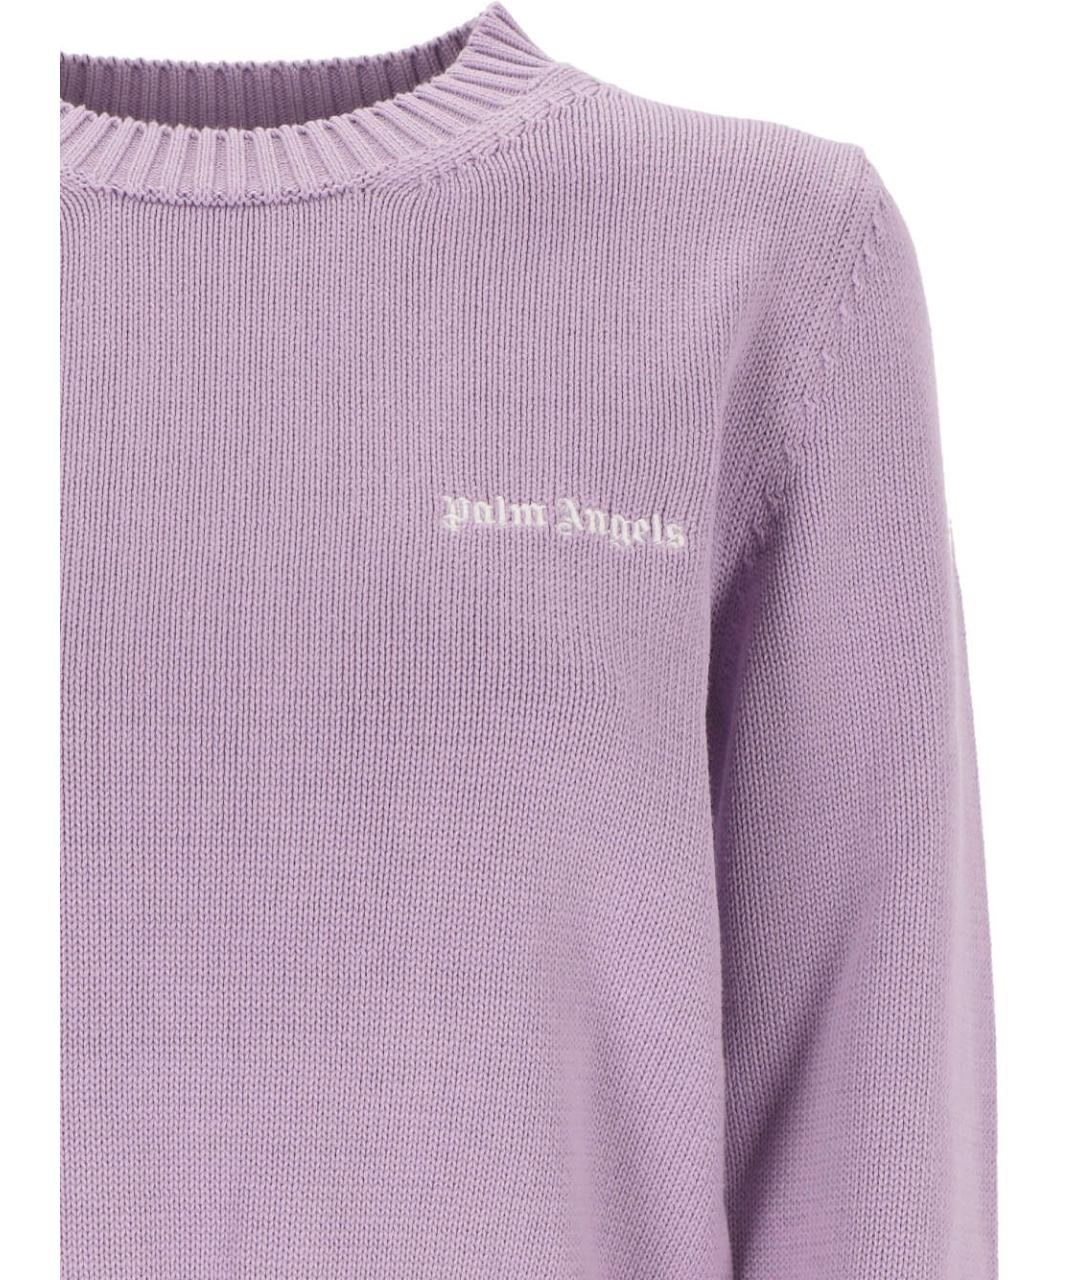 PALM ANGELS Фиолетовый хлопковый джемпер / свитер, фото 2